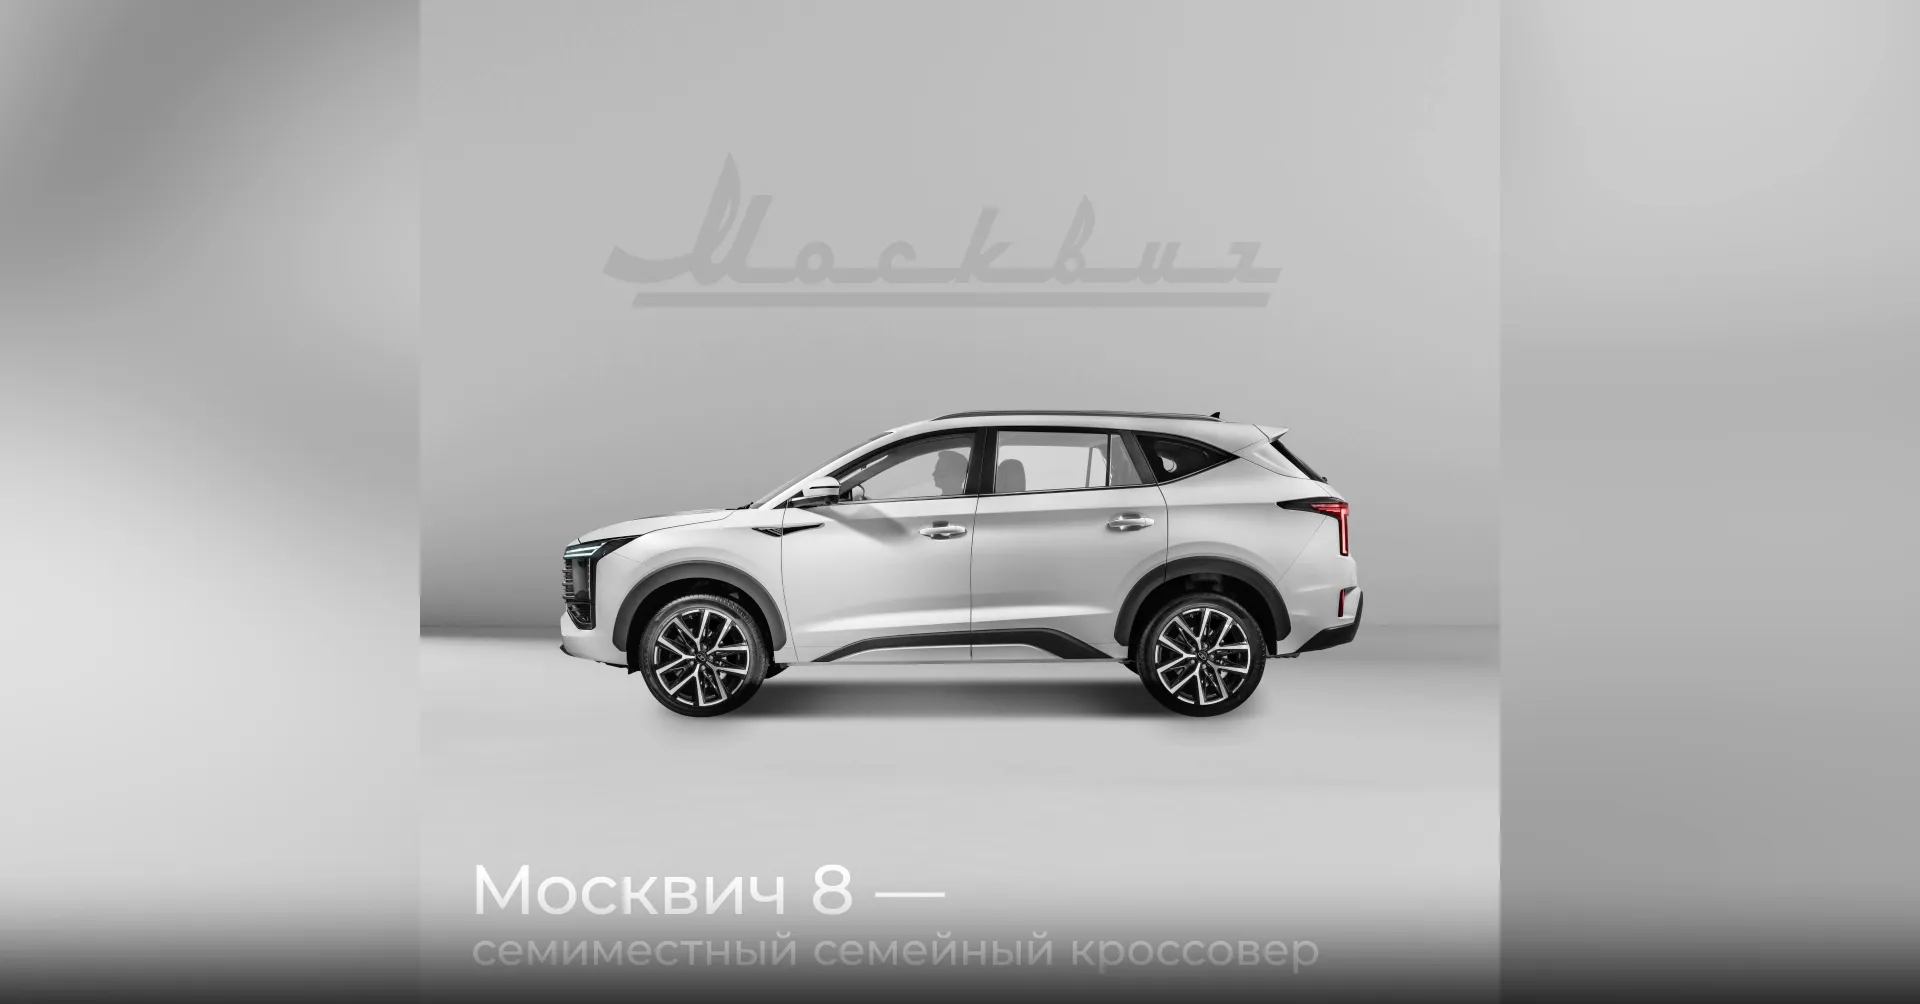 Кроссовер "Москвич 8" начнут продавать в конце года